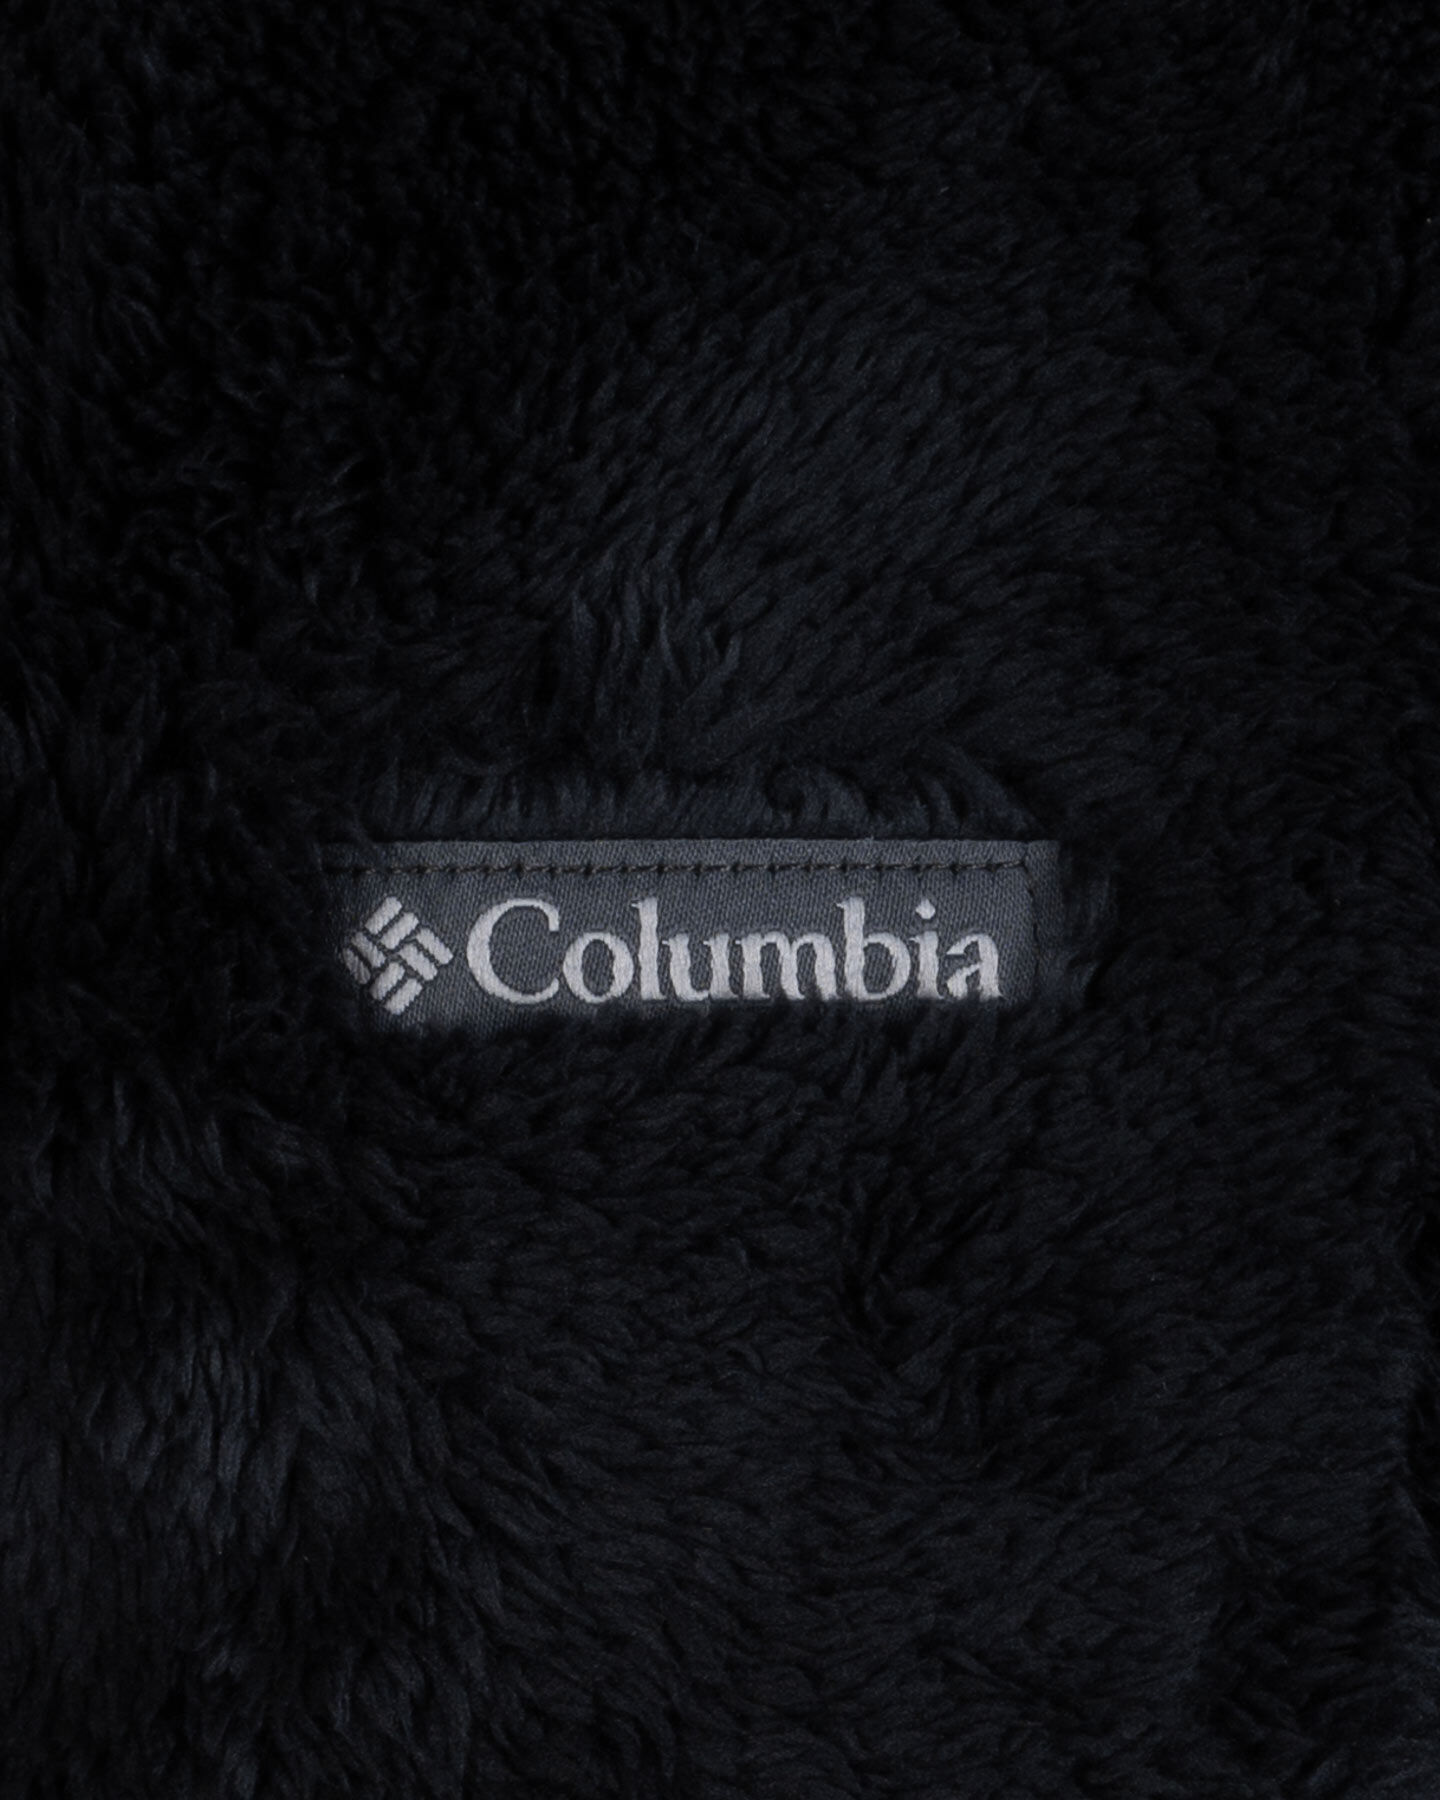  Felpa COLUMBIA SHERPA W S5576530|010|M scatto 2